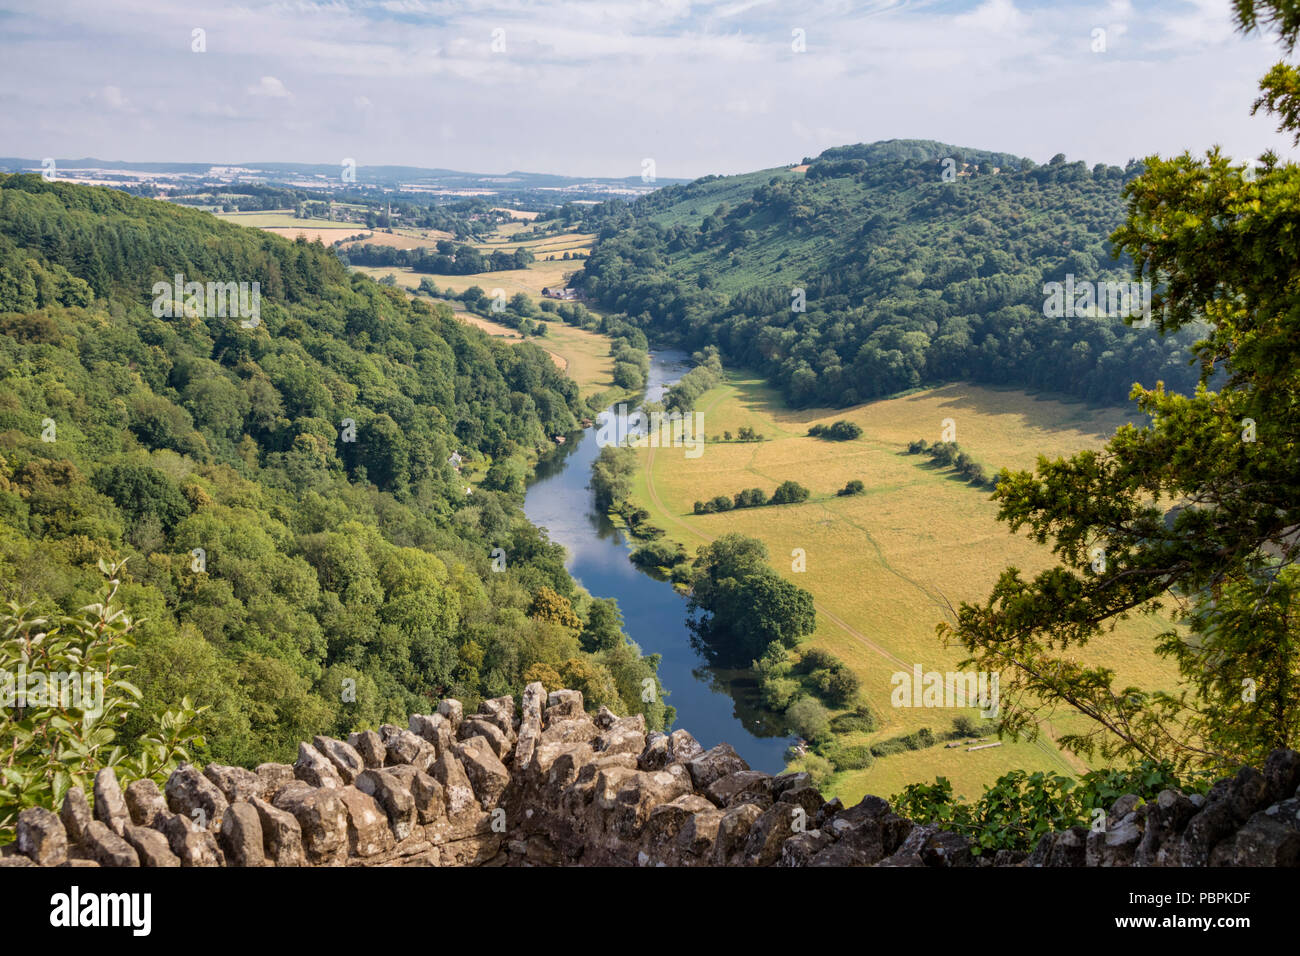 Symonds Yat rock dans la vallée de la Wye, vue sur la rivière Wye, Herefordshire, Angleterre Royaume-uni Banque D'Images